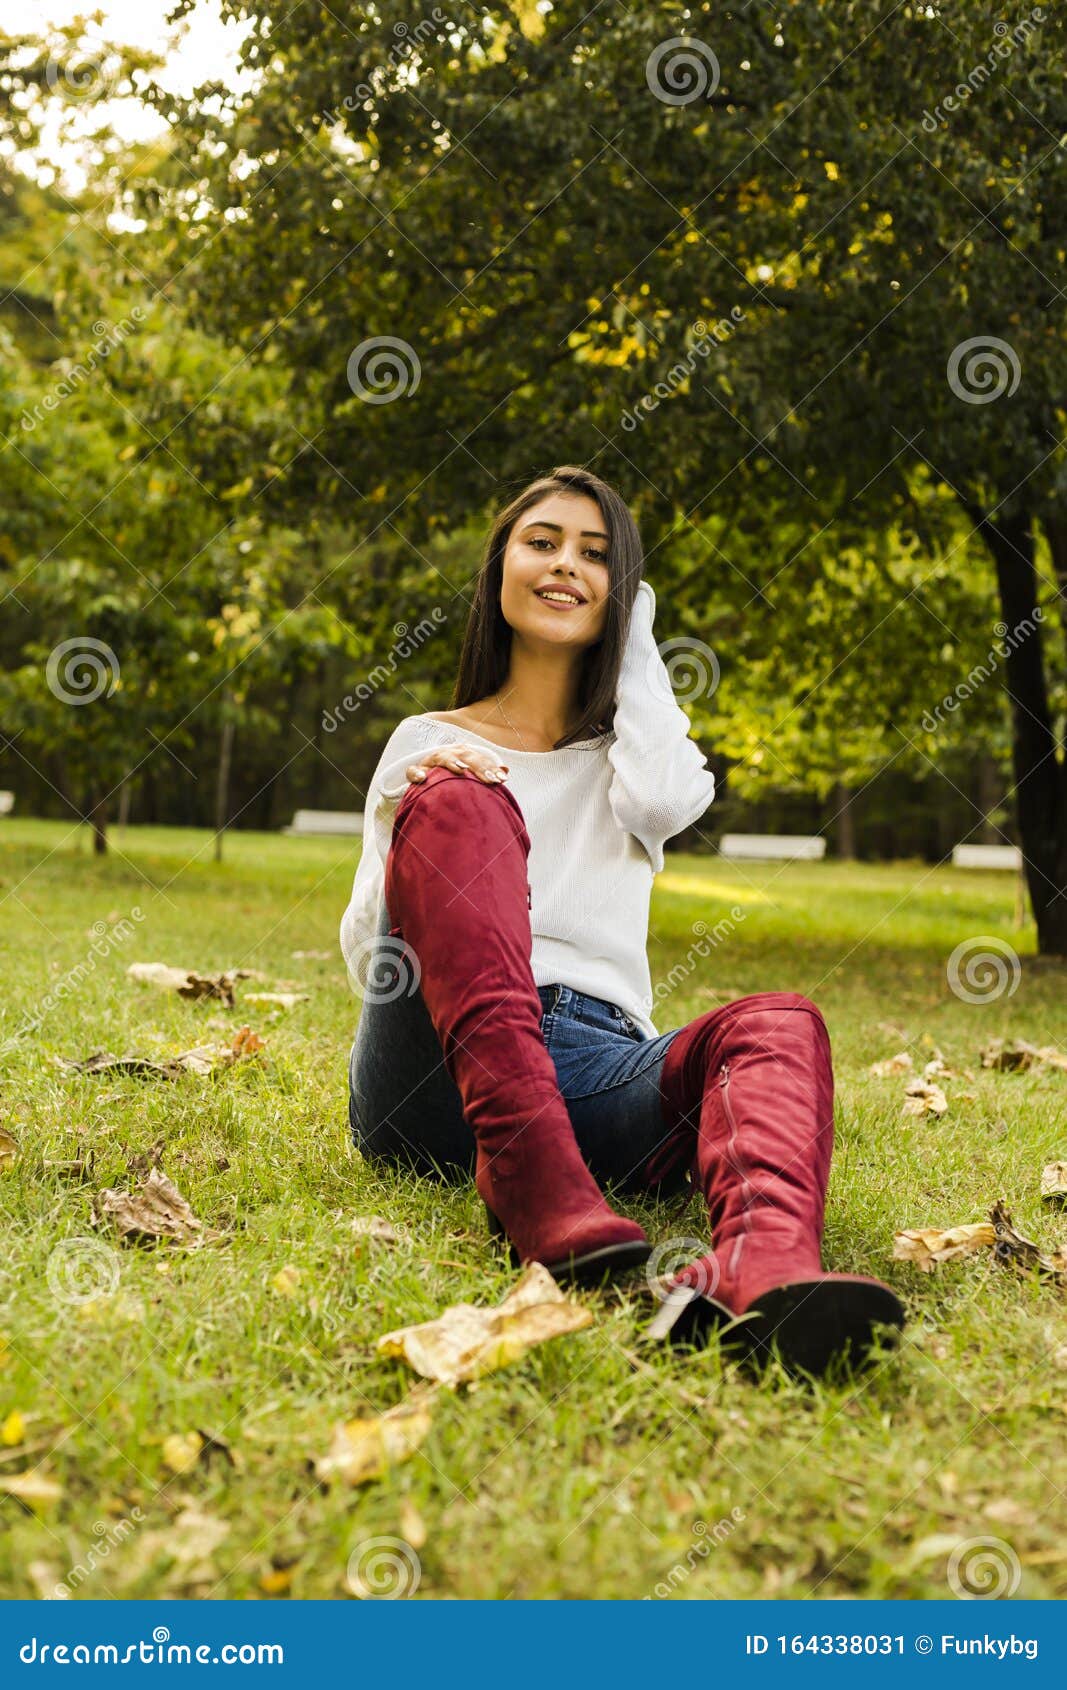 beautyfull woman outside in the park autumn sesason